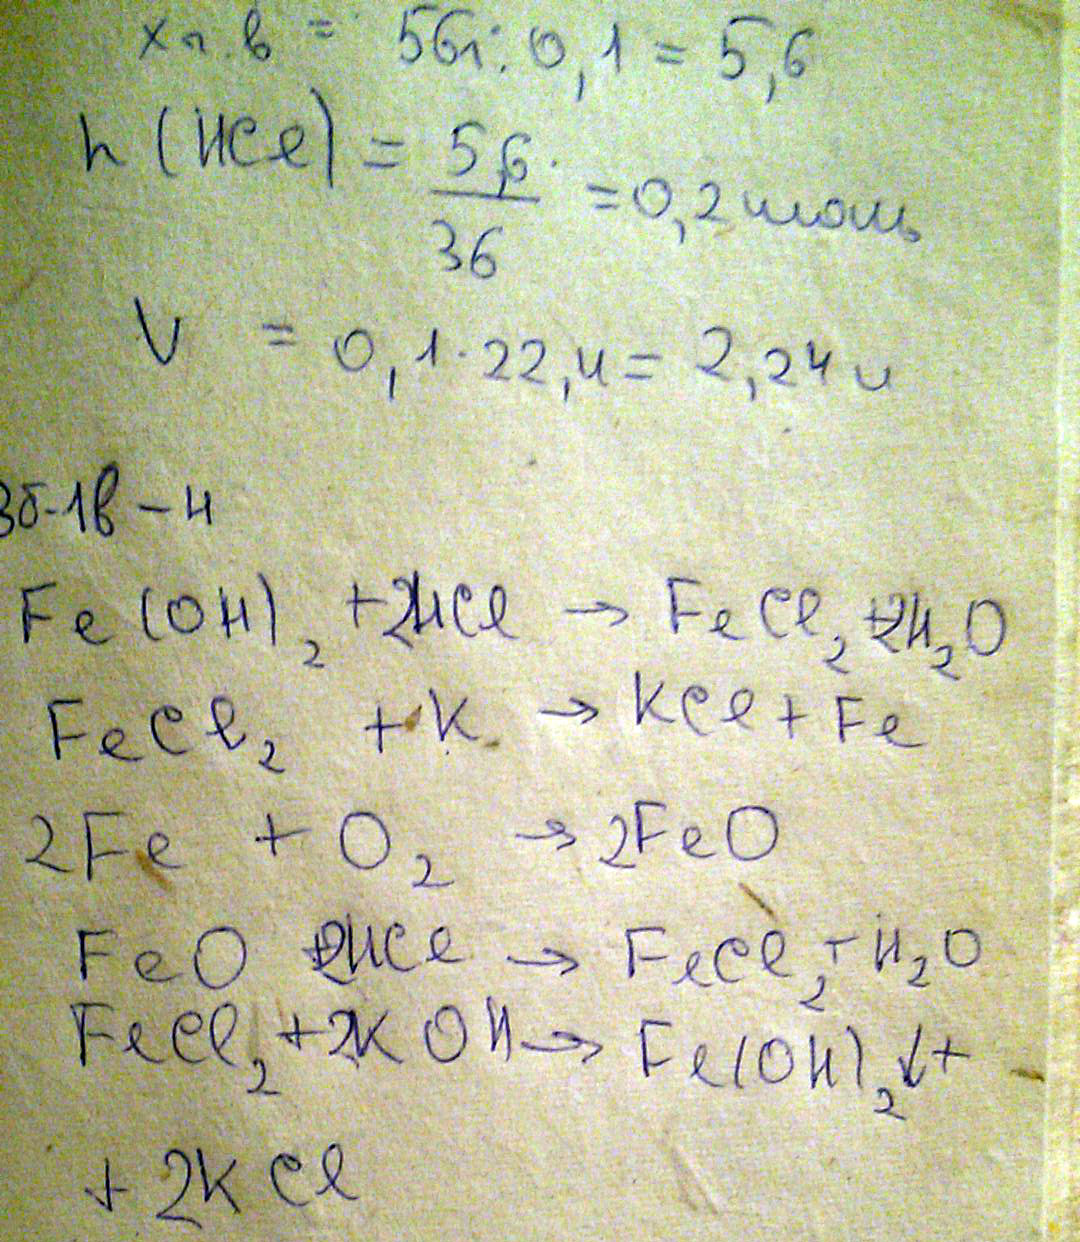 3. Осуществить цепочку превращений: Fe(OH)2 FeCl2 Fe FeO FeCl2 Fe(OH)2